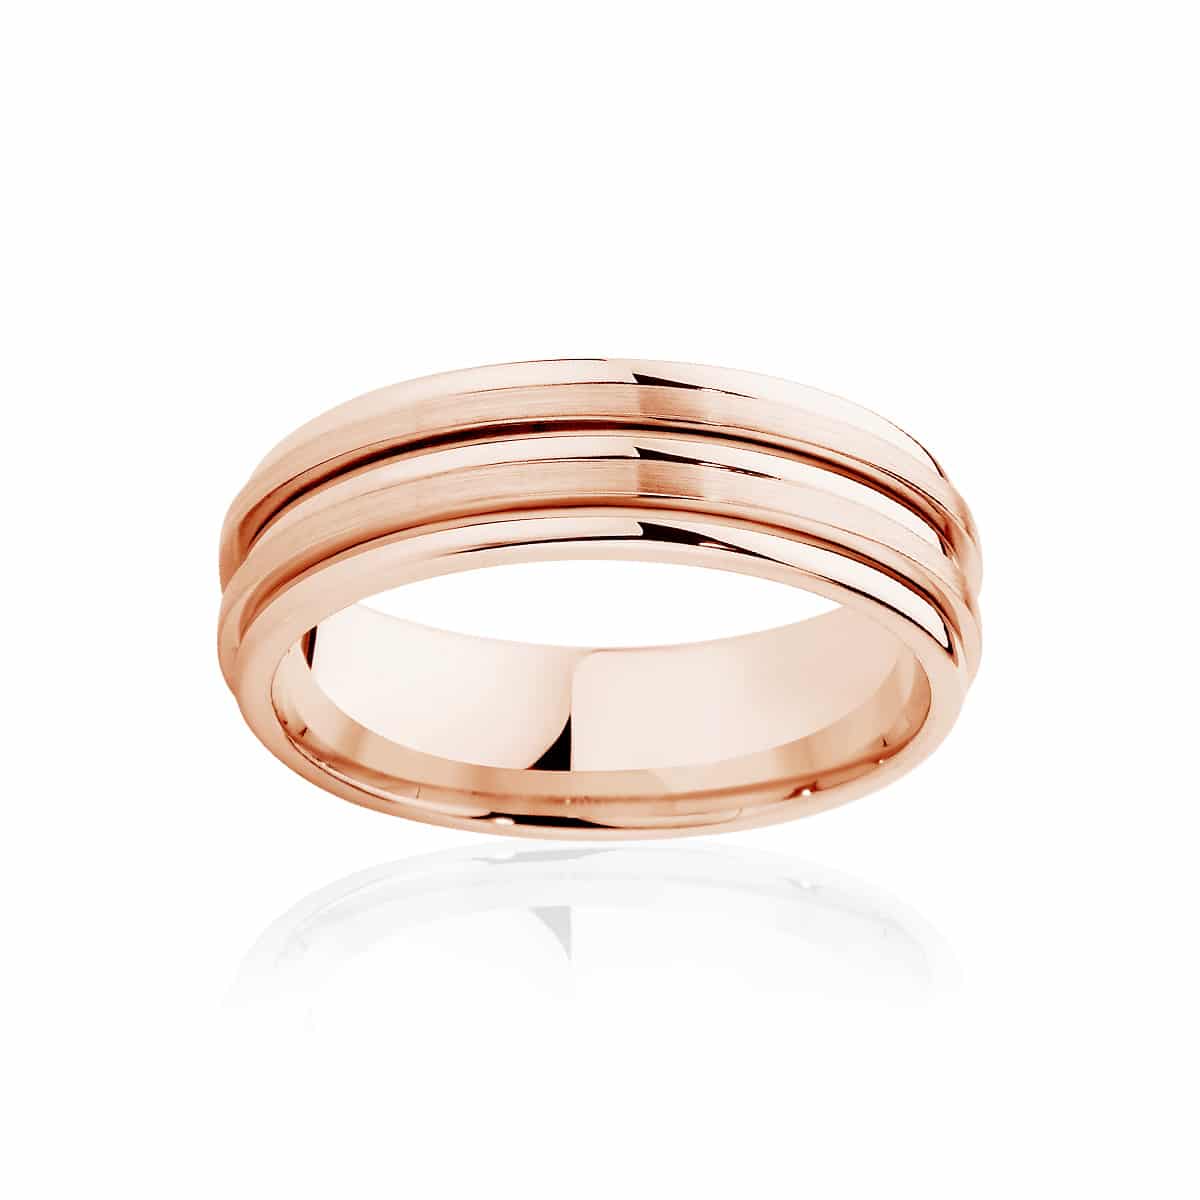 Mens Rose Gold Wedding Ring|Stamford